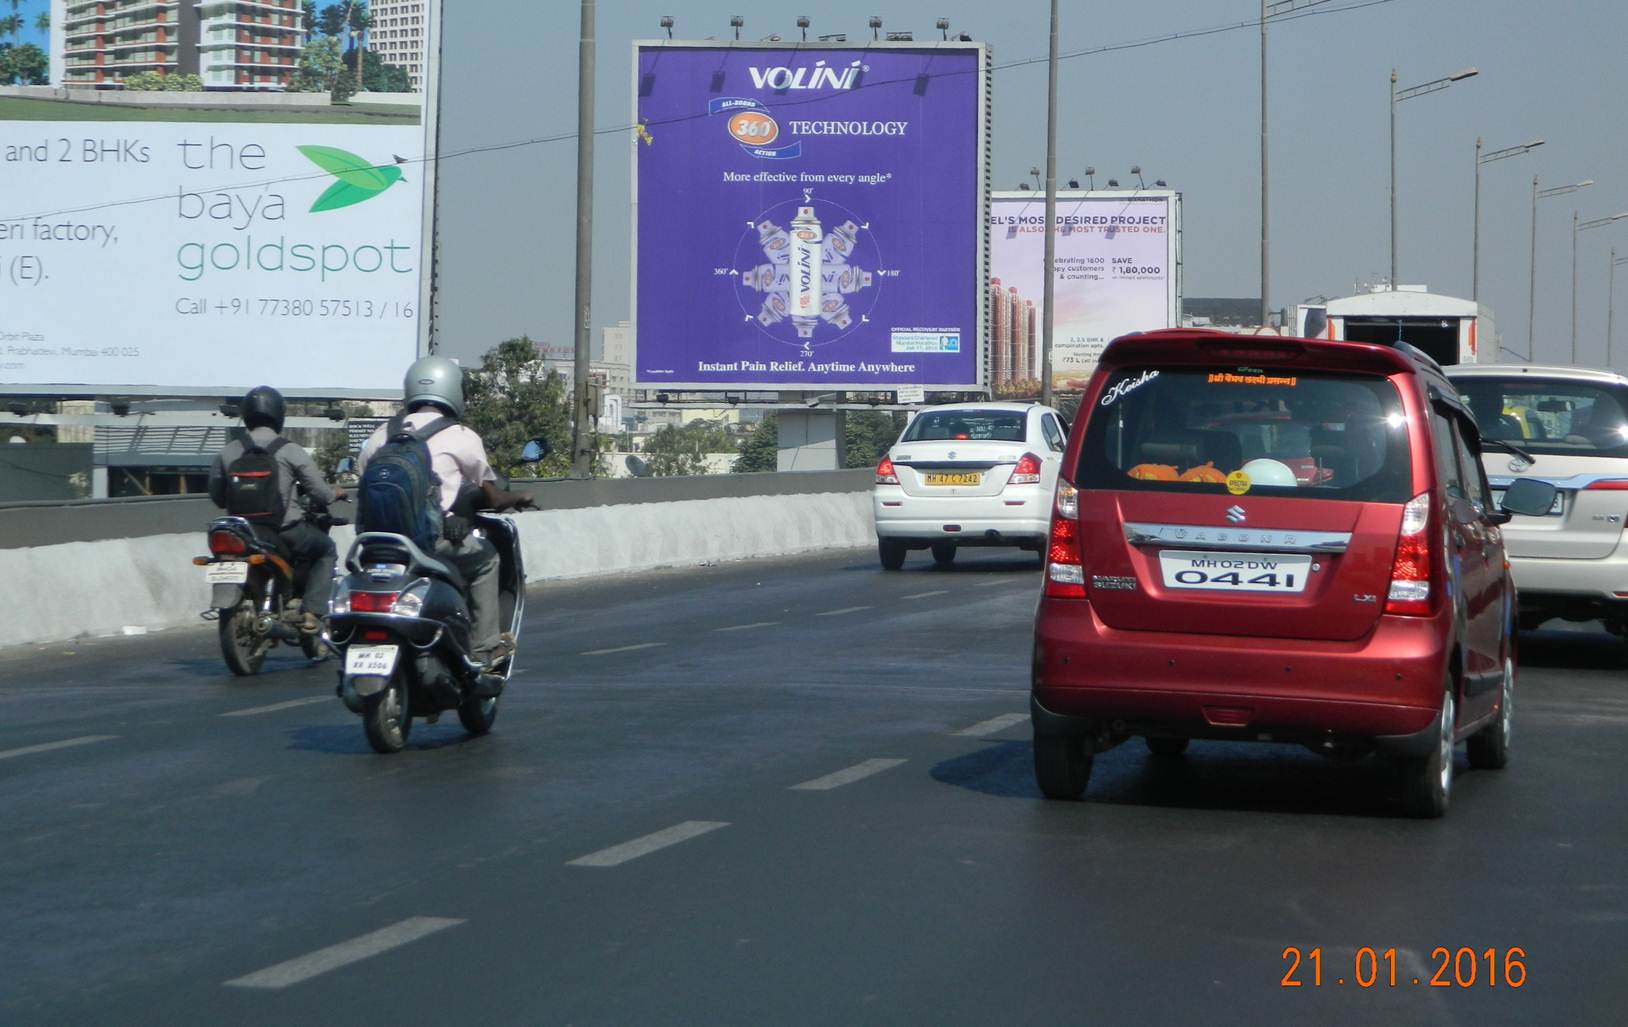 WEH, Andheri Jog Flyover ET, Mumbai